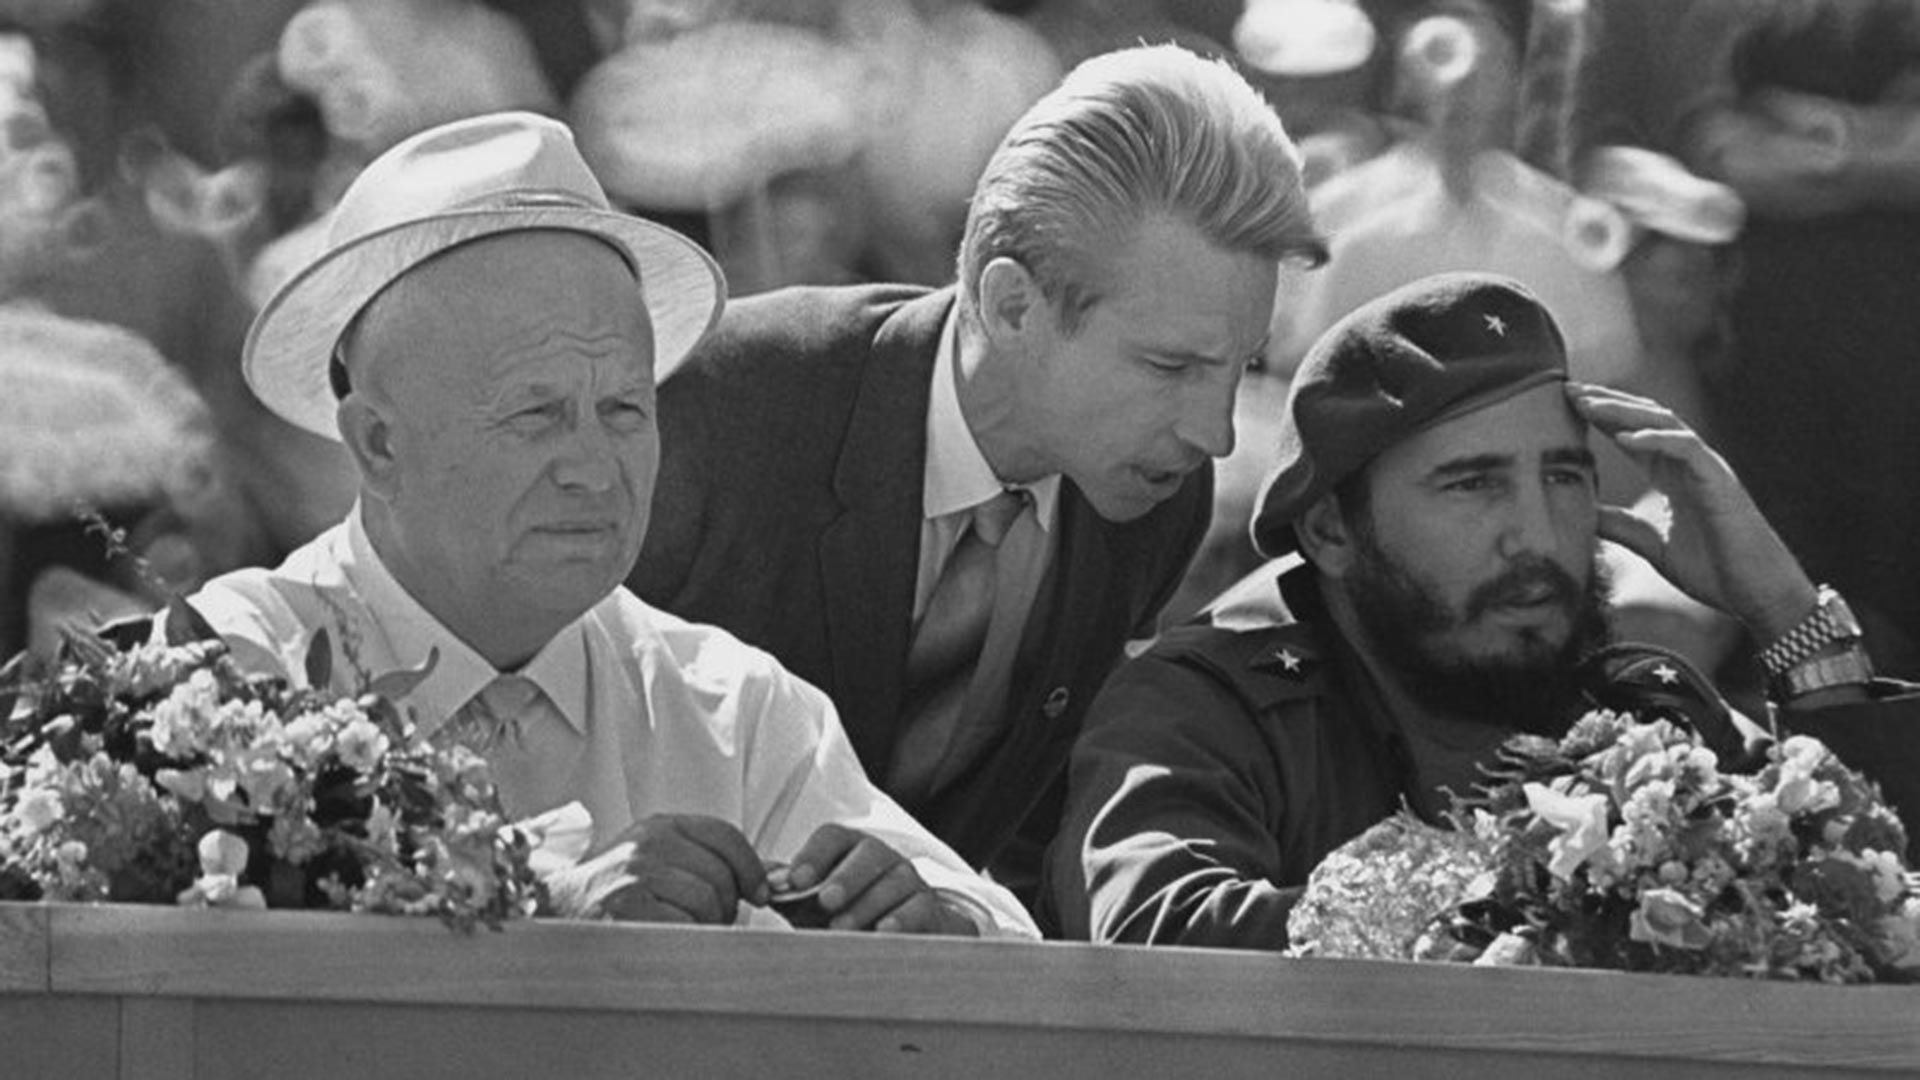 Khrouchtchev et Castro lors d'un meeting d'amitié soviéto-cubaine à Moscou, le 23 mai 1963